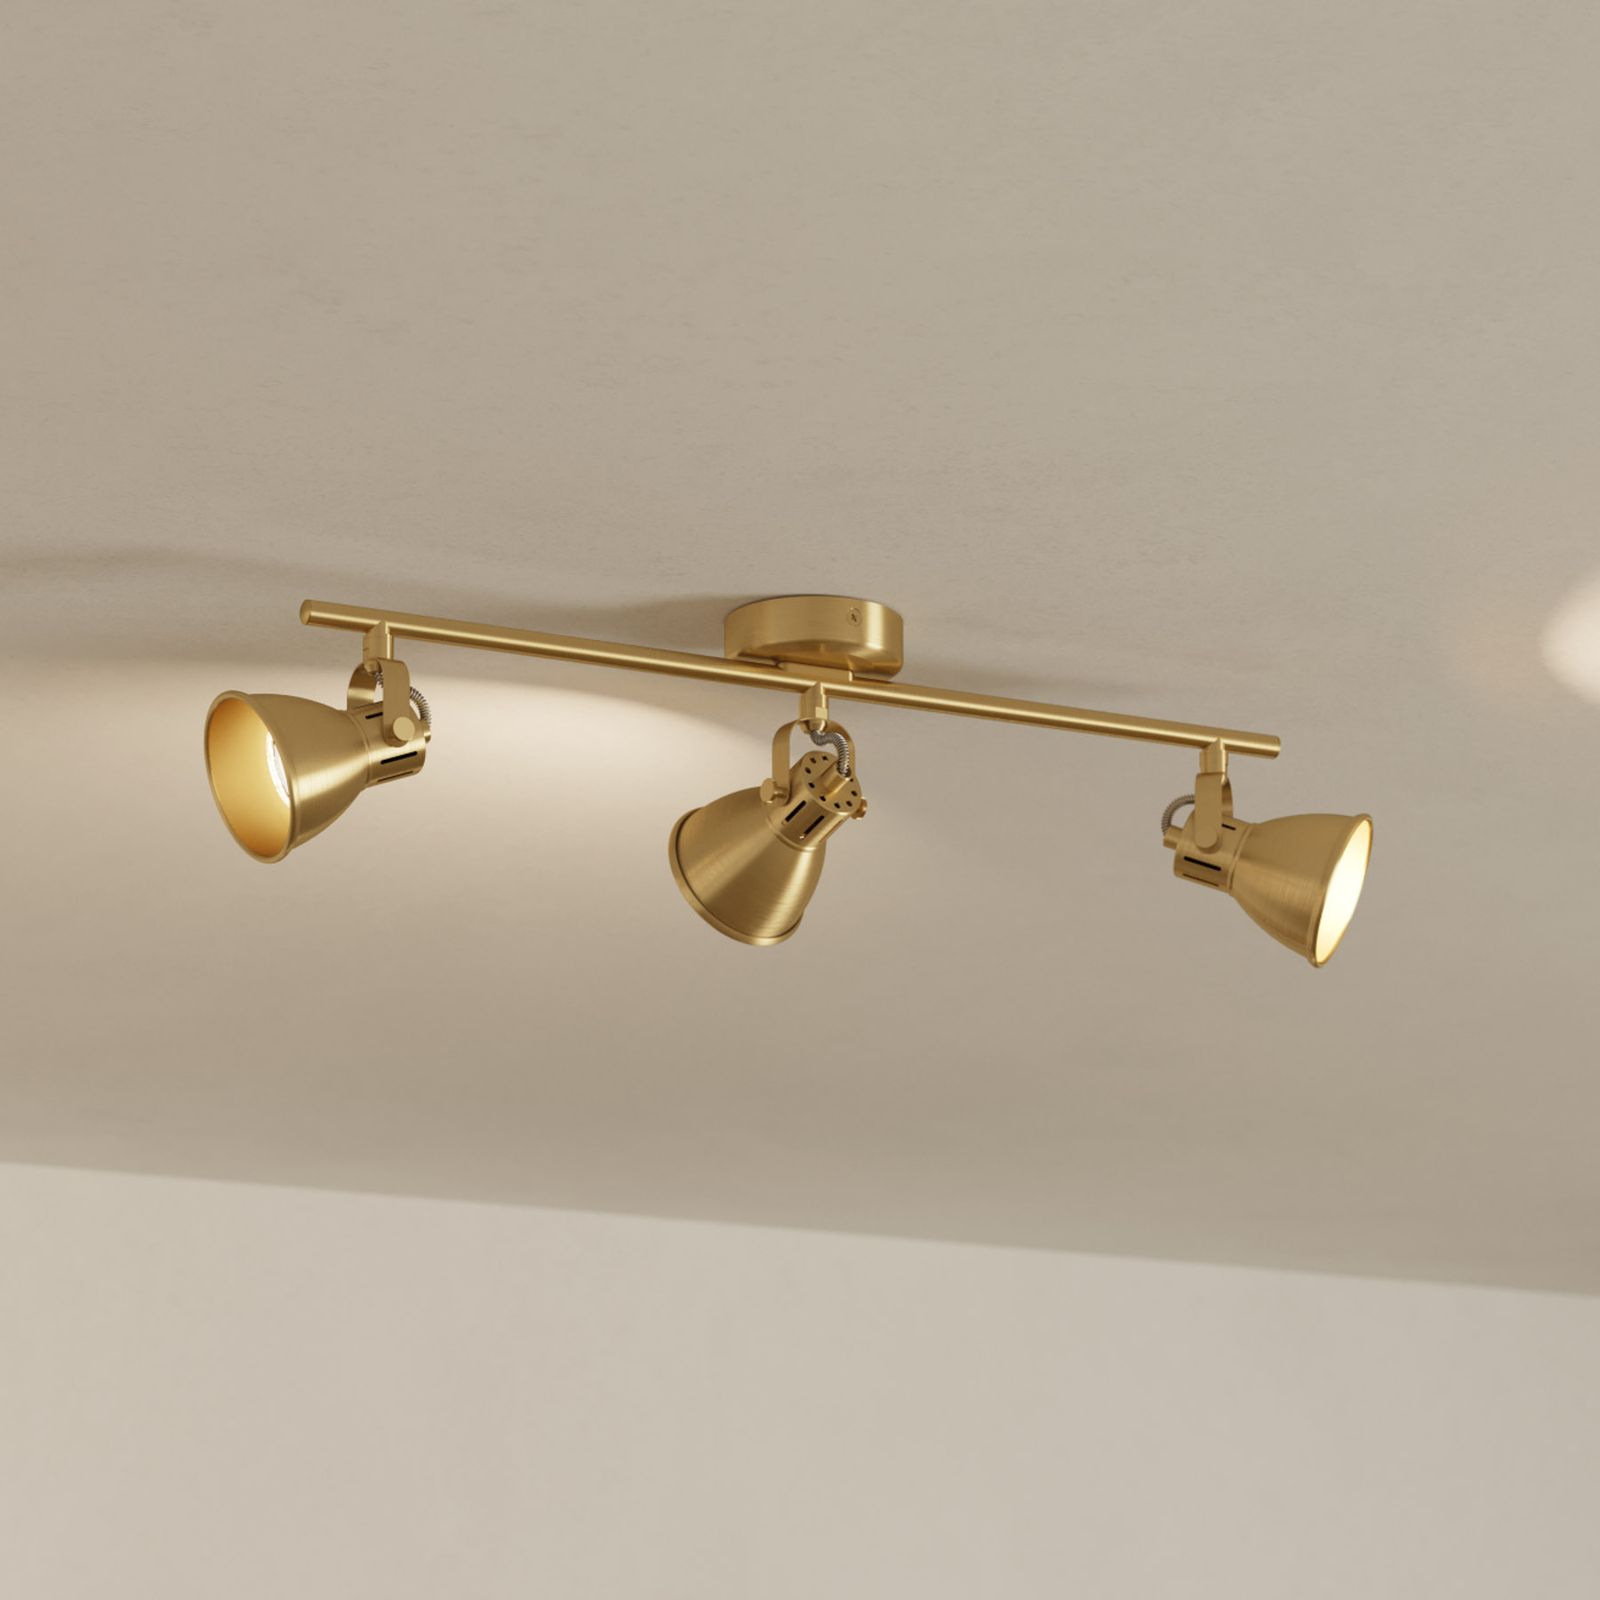 Spot plafond Seras, laiton-doré brossé, à 3 lampes